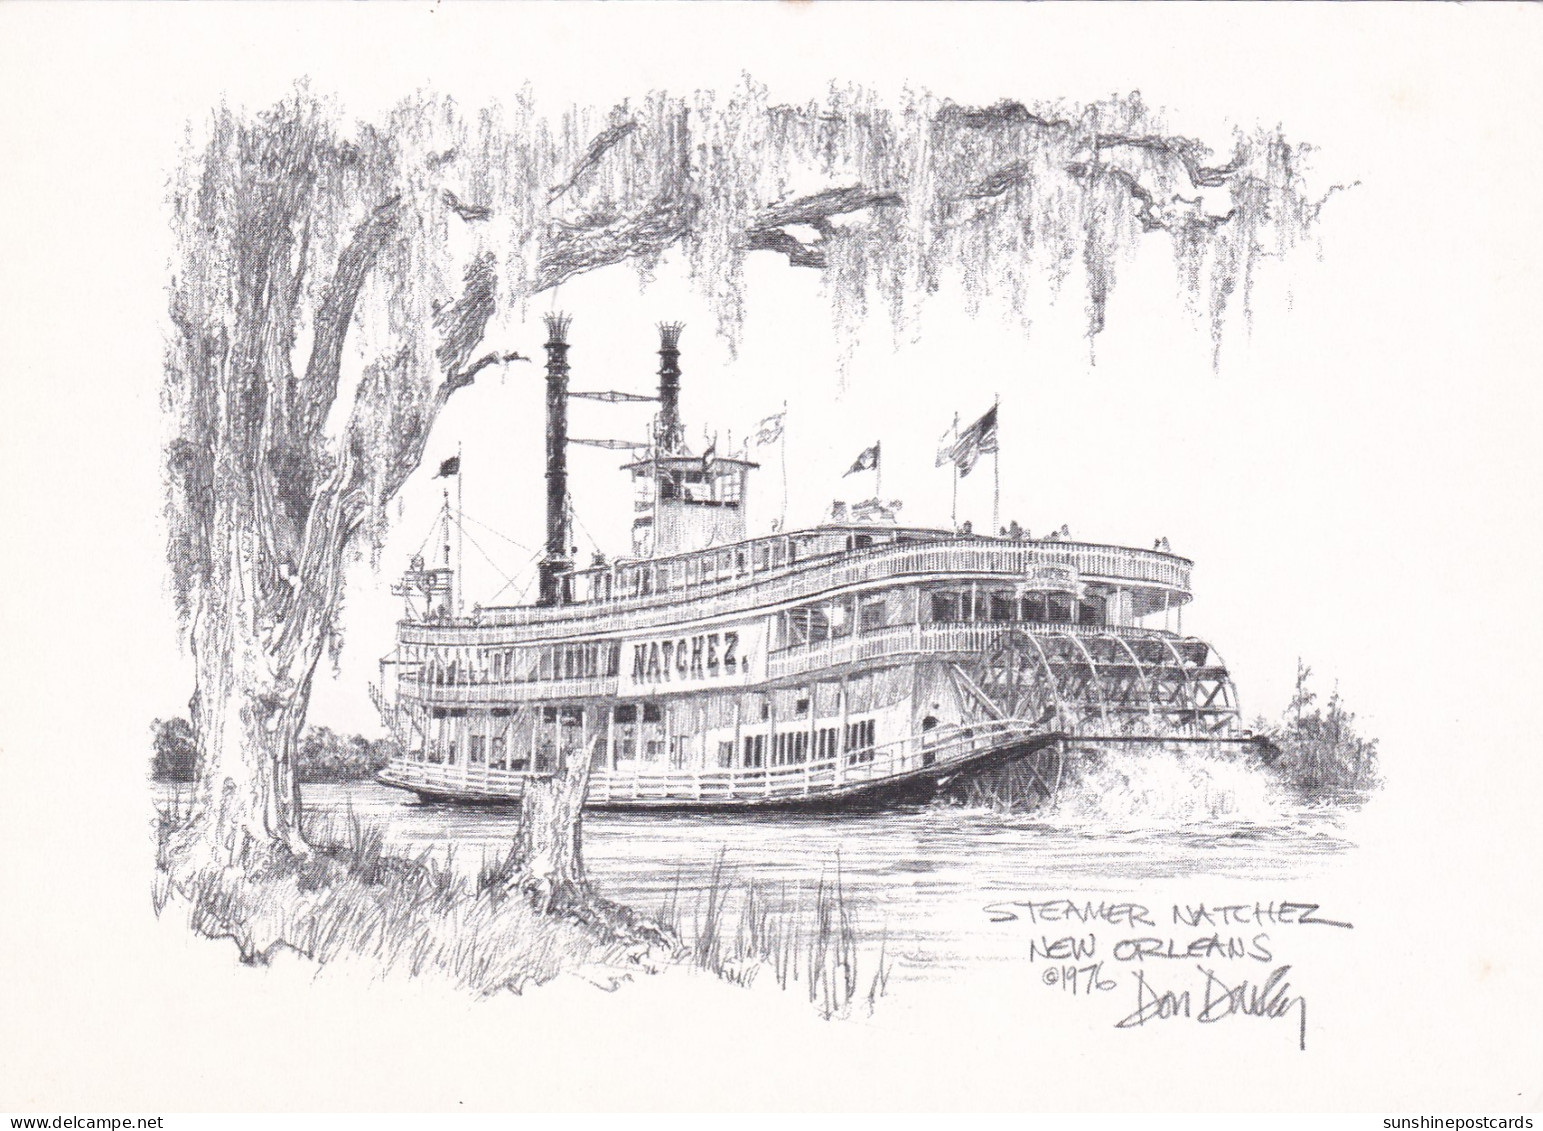 Louisiana New Orleans Steamer Natchez Artist Don Davey - New Orleans